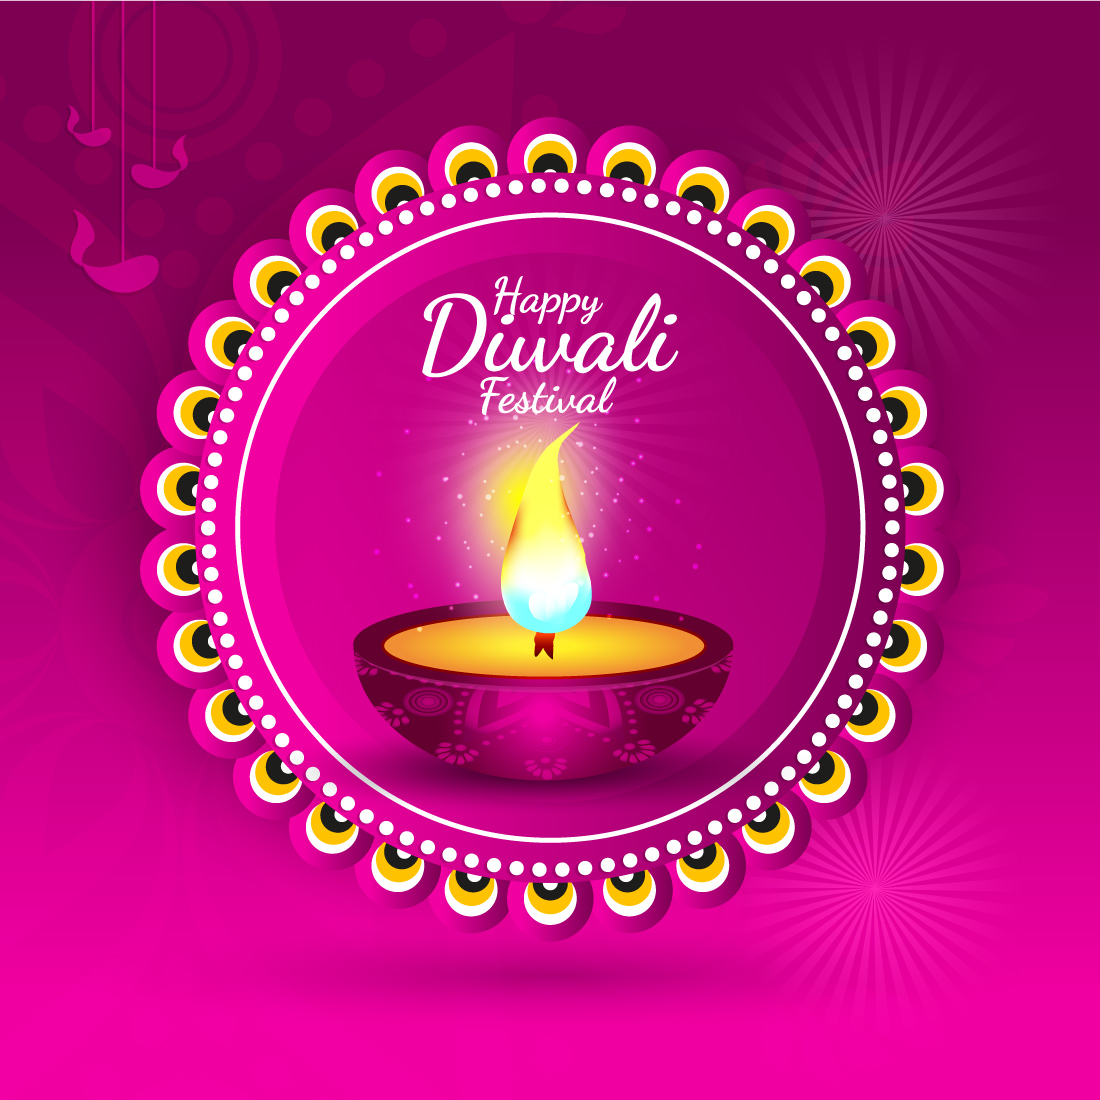 Happy diwali festival greeting card with diya.